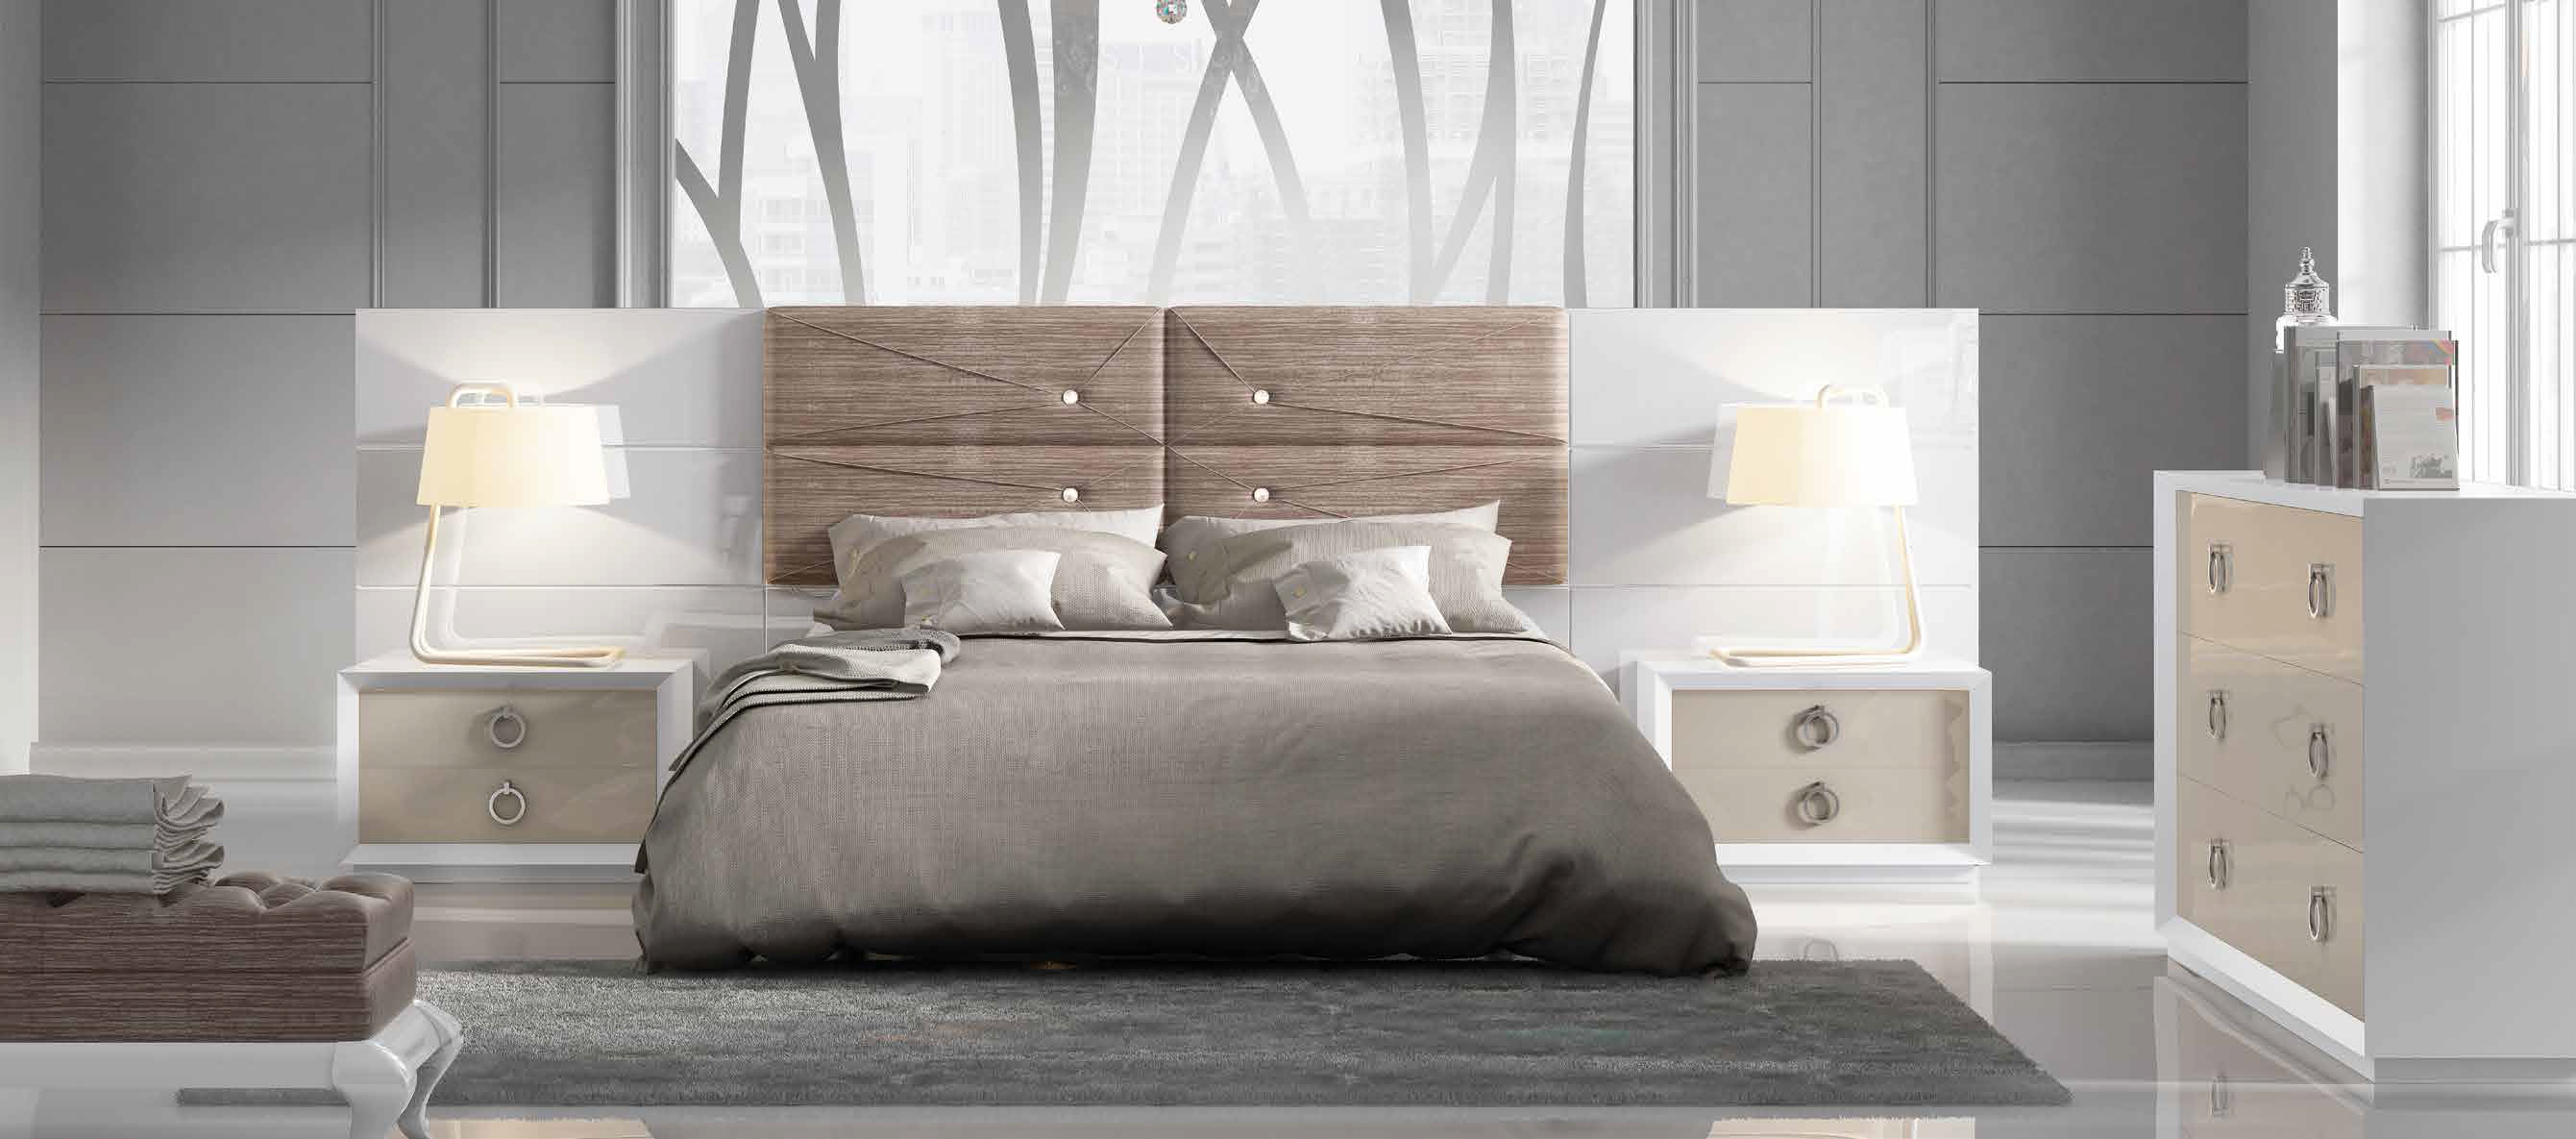 Brands Franco Furniture Avanty Bedrooms, Spain DOR 75